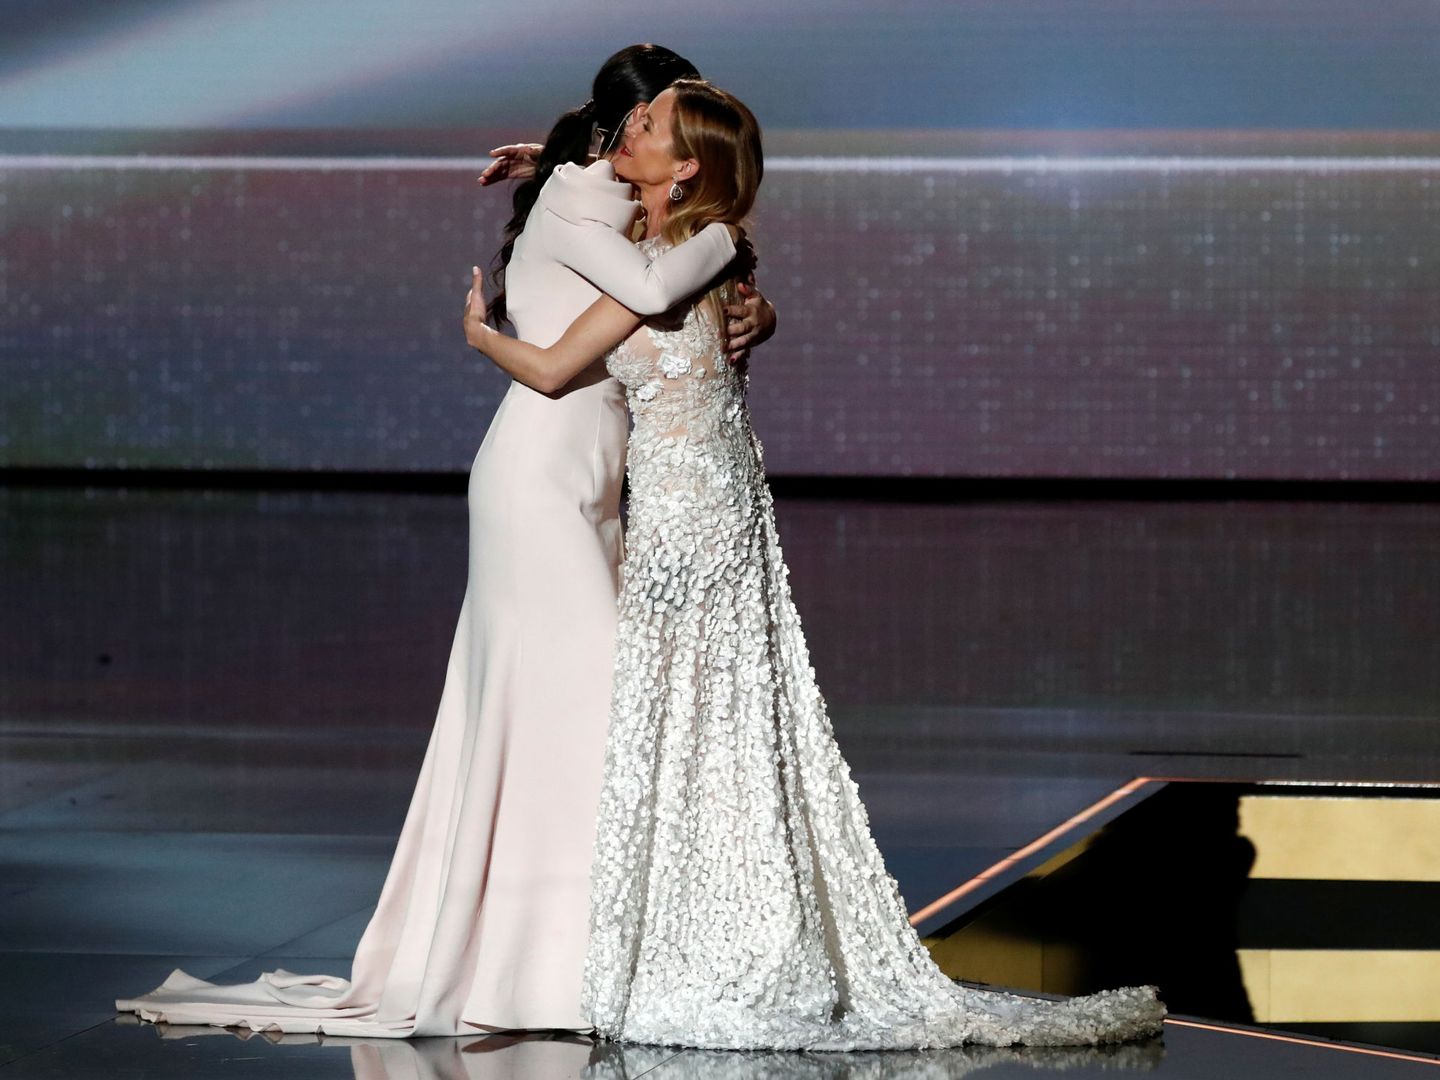 Abrazada a su hermana, María, en la gala.  (Reuters)